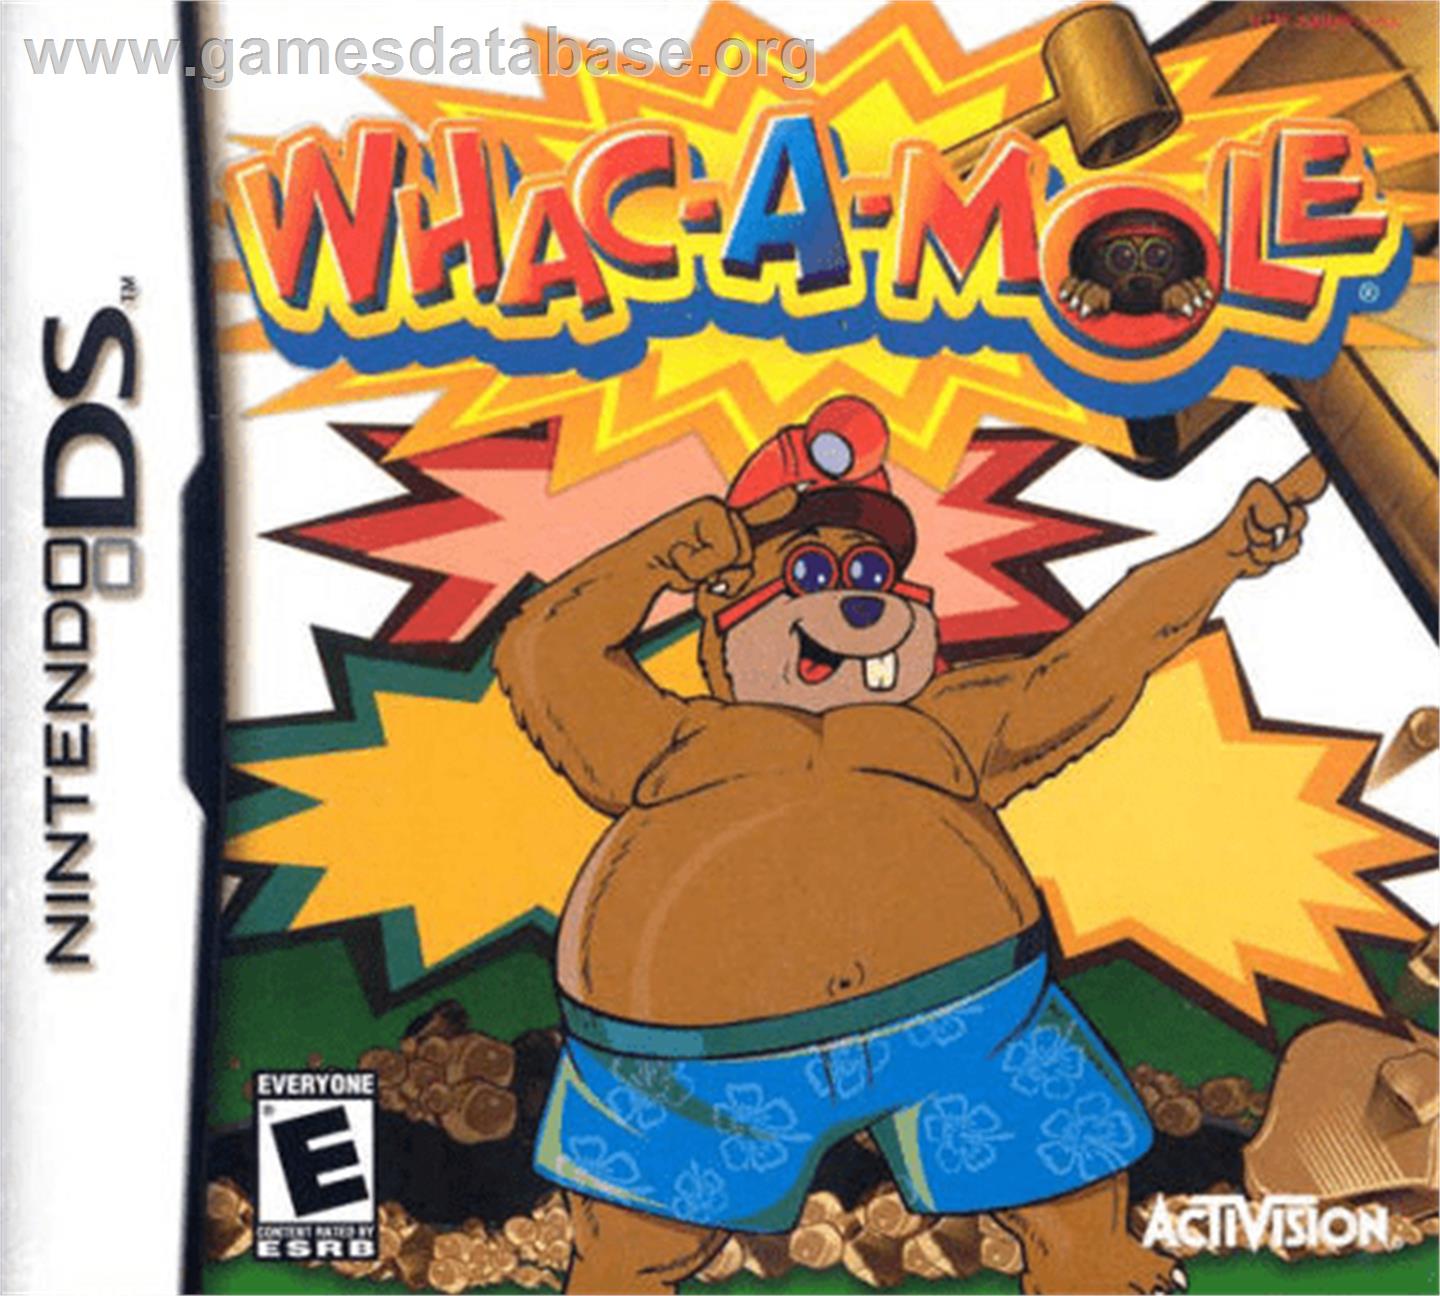 Whac-A-Mole - Nintendo DS - Artwork - Box